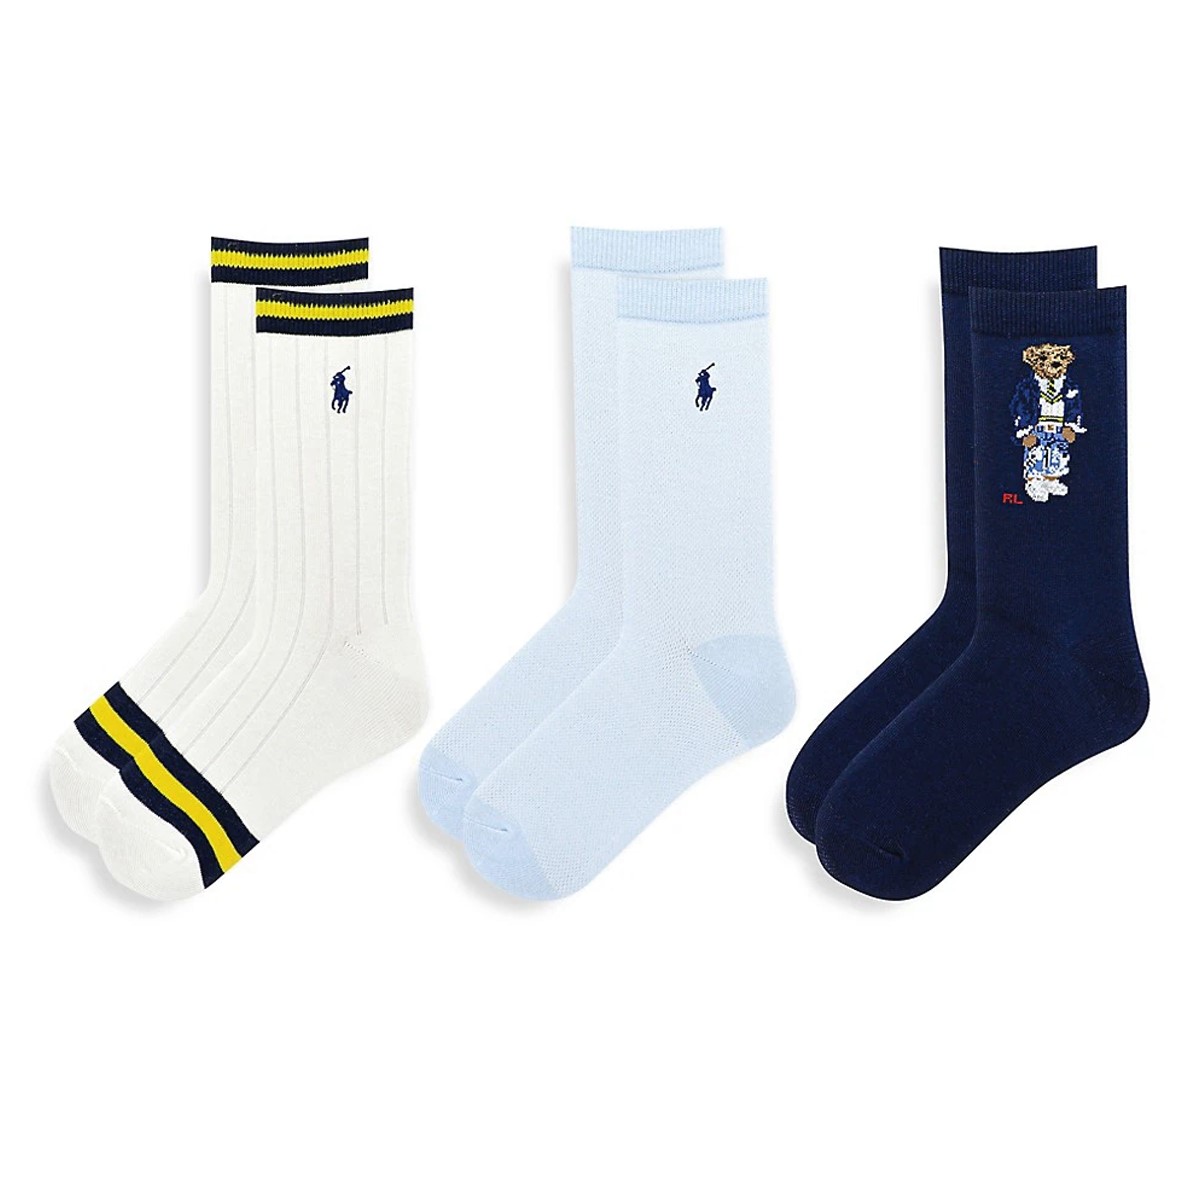 Paquet de 3 paires de chaussettes Cricket Bear blanches et bleues pour femmes